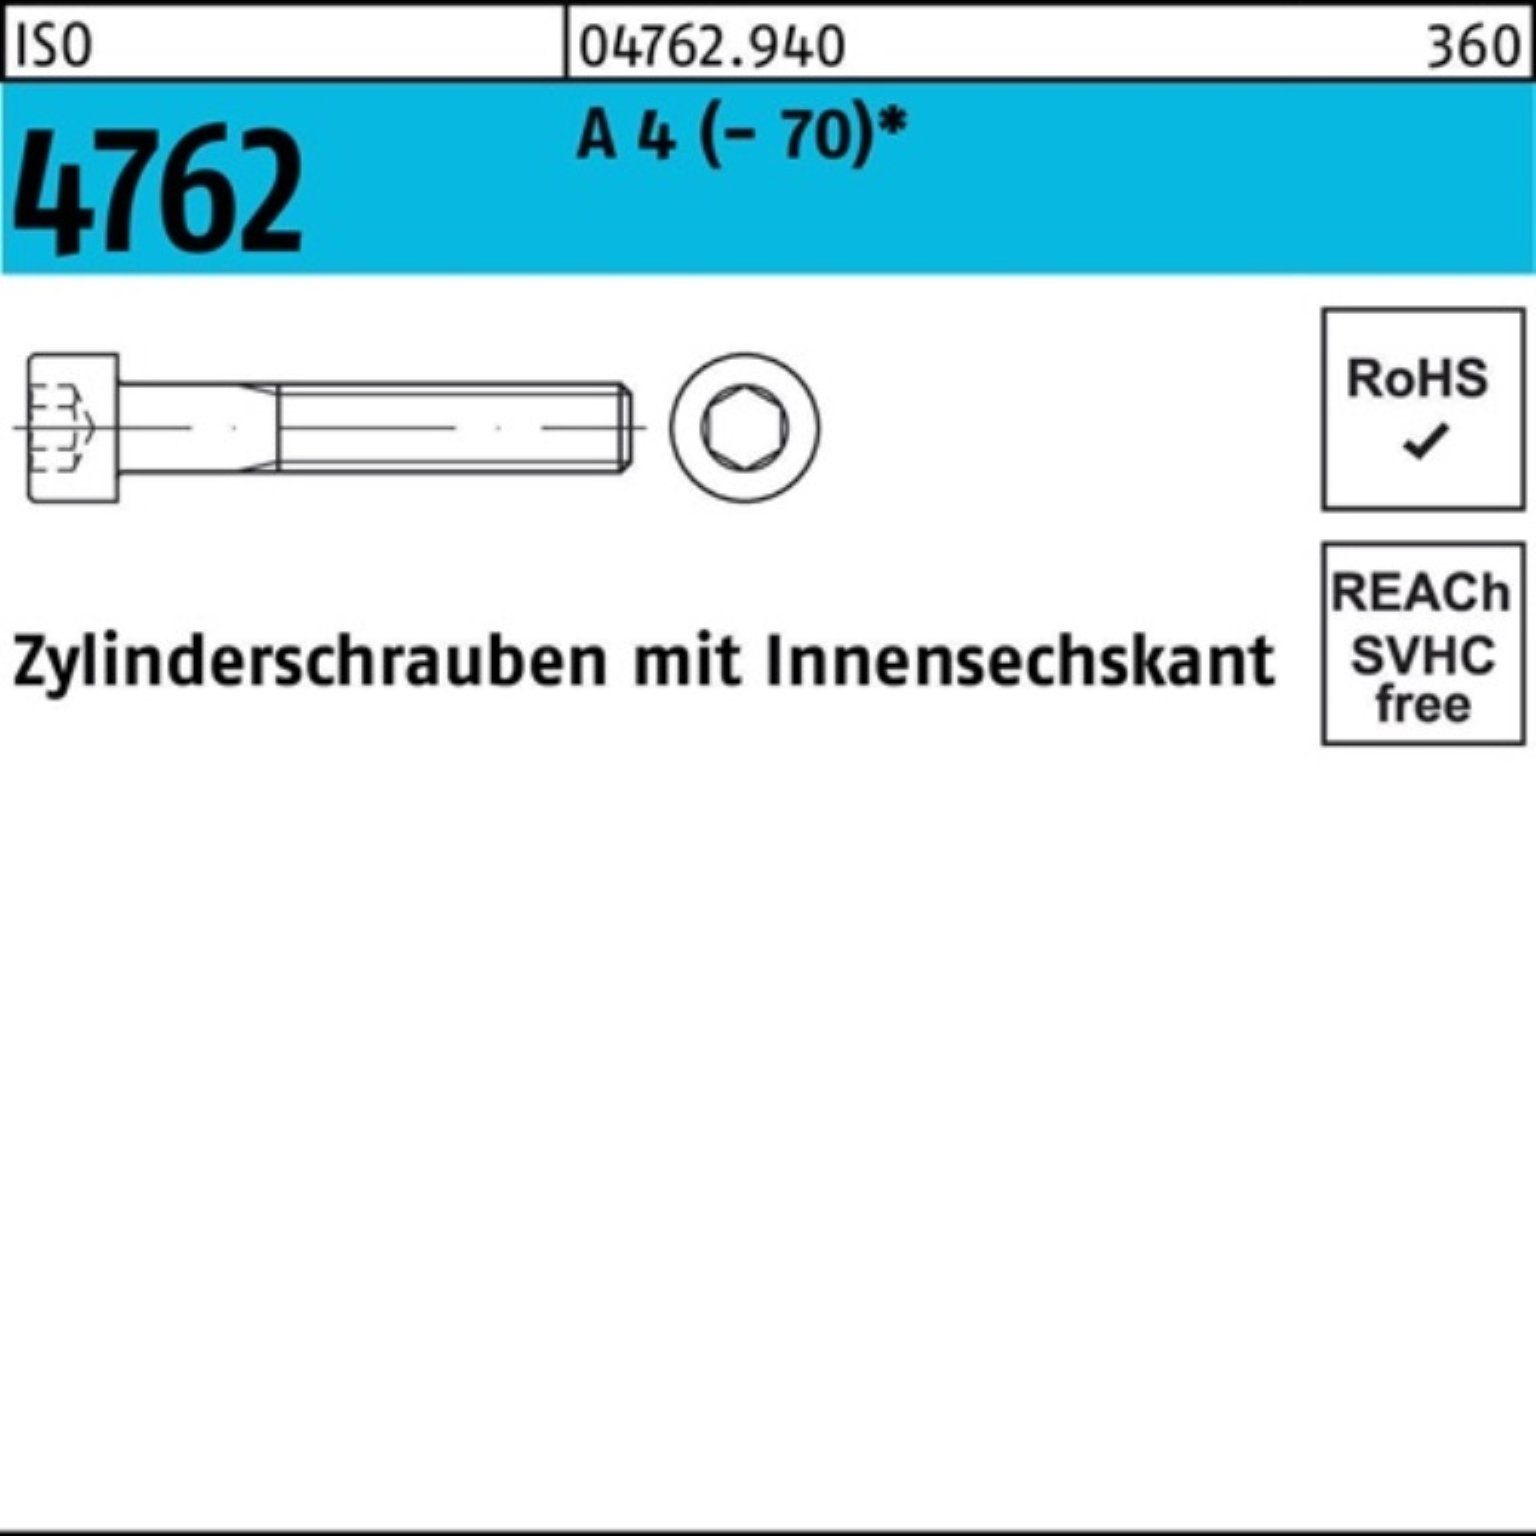 Reyher Zylinderschraube (70) ISO 200 M8x Zylinderschraube 4762 4 65 A Innen-6kt S Pack 200er